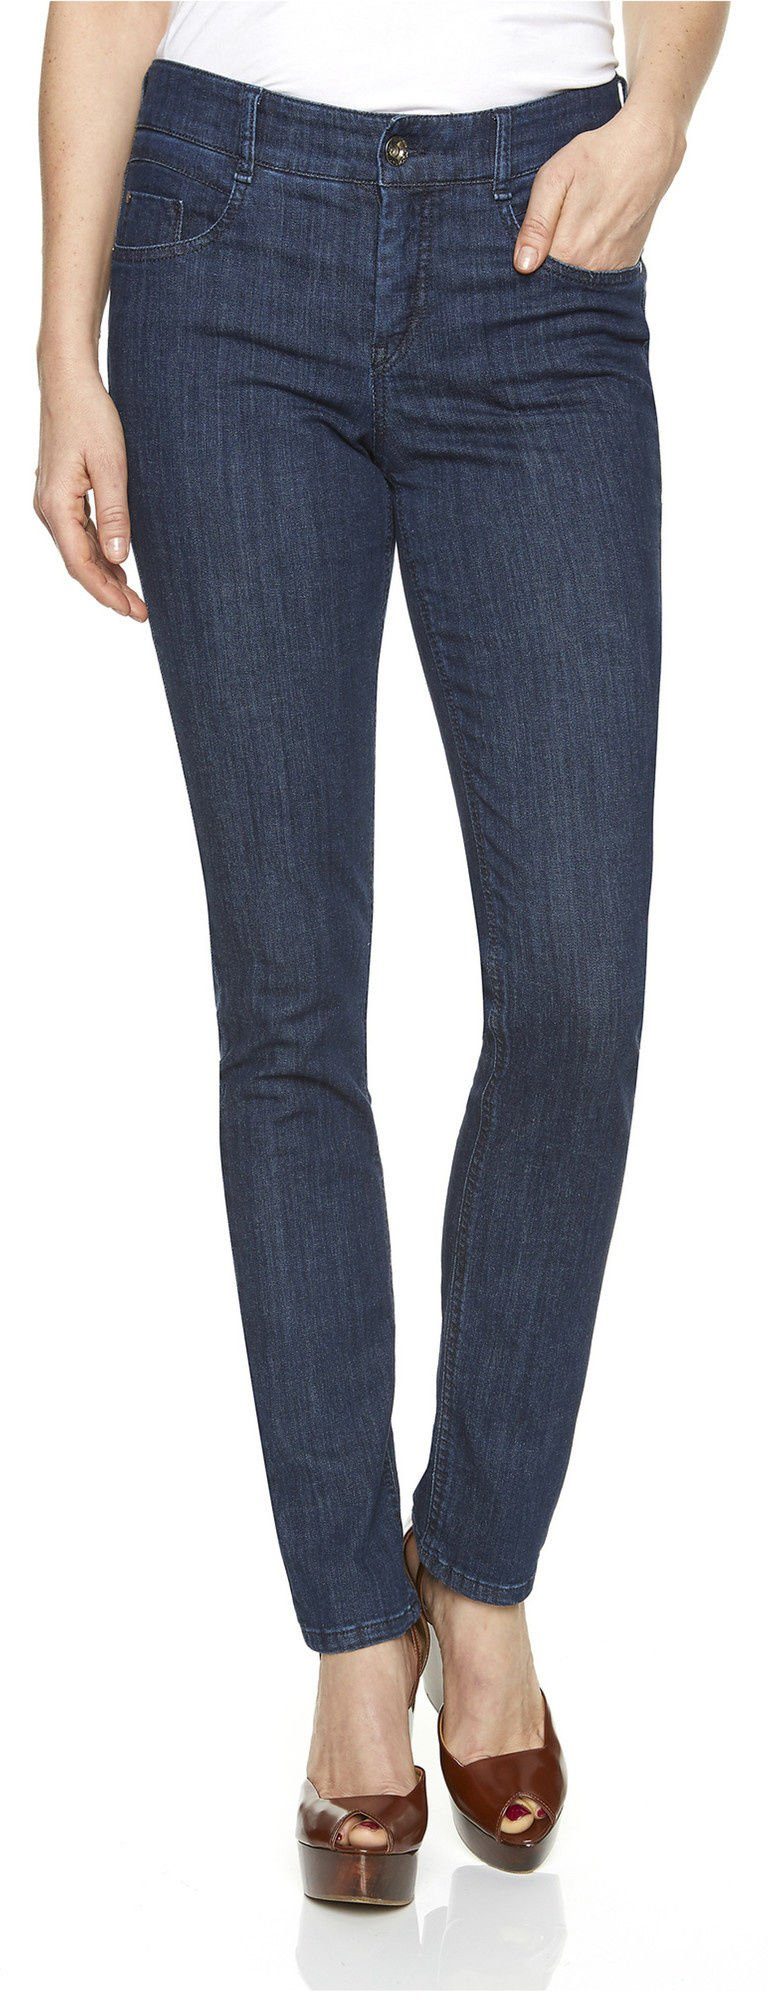 Atelier GARDEUR Damen Jeans online kaufen | OTTO